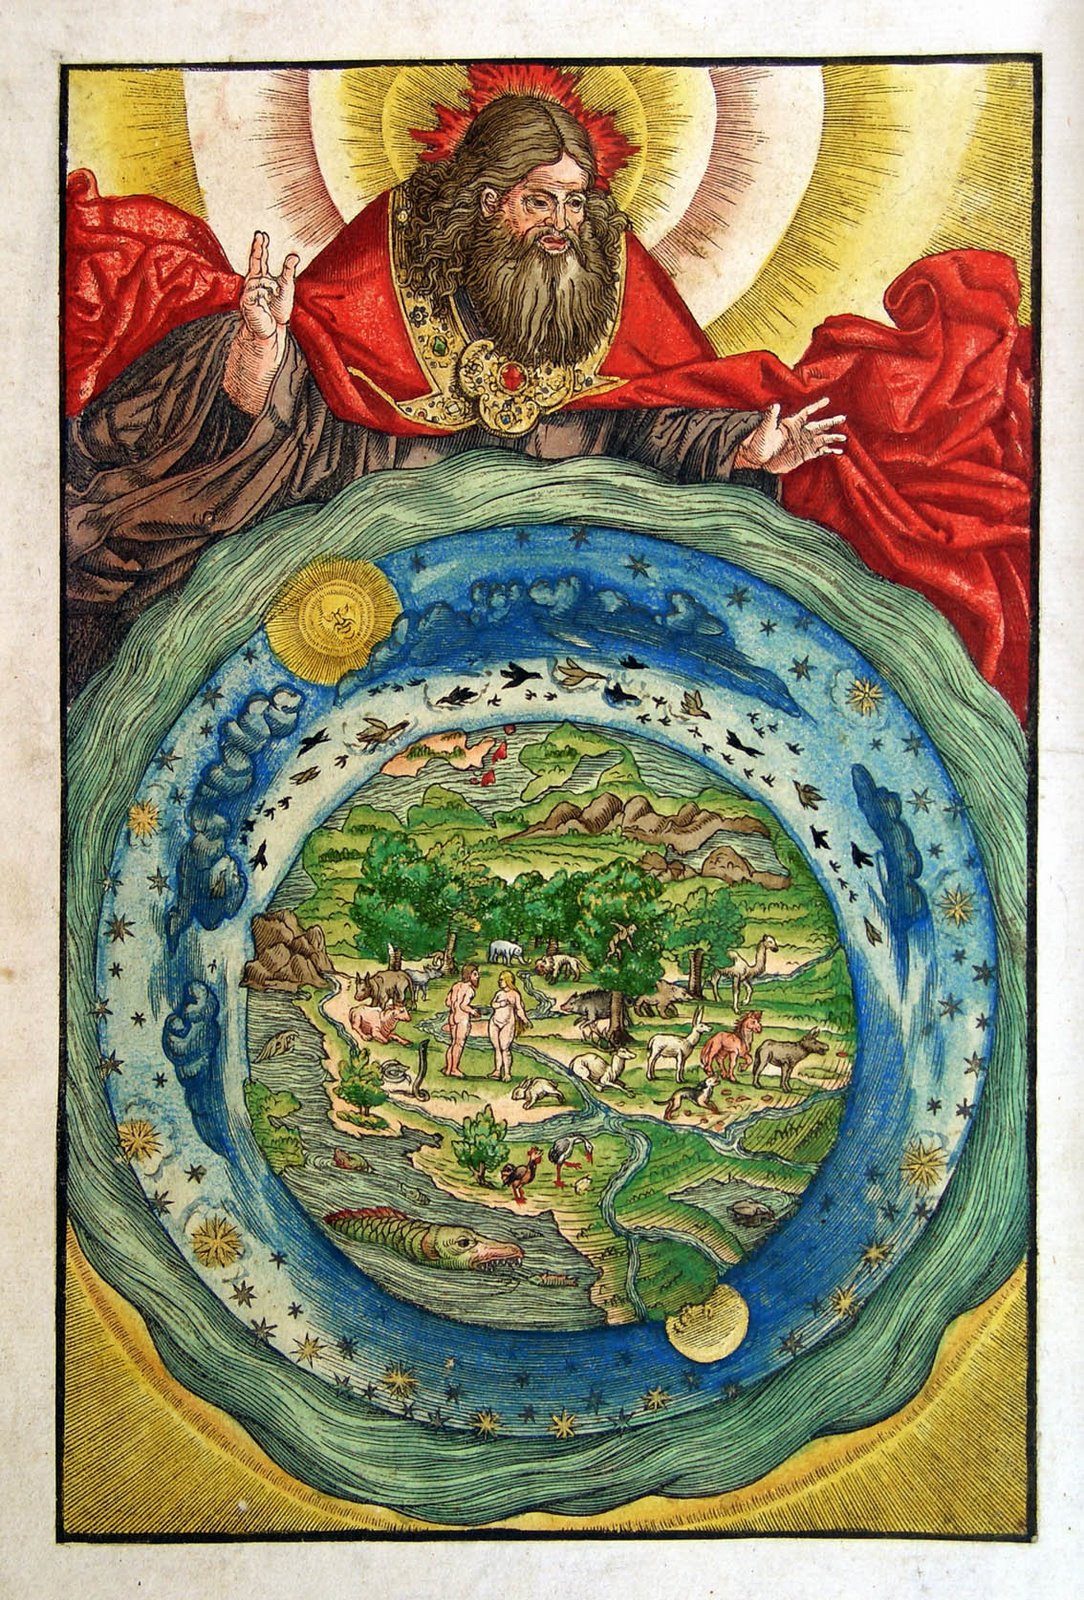 Tác phẩm “The Creation,” (Sự Sáng Tạo) của họa sĩ Lucas Cranach vẽ năm 1534, từ bản dịch Kinh Thánh năm 1534 của nhà thần học Martin Luther. (Ảnh: Tài liệu công cộng)